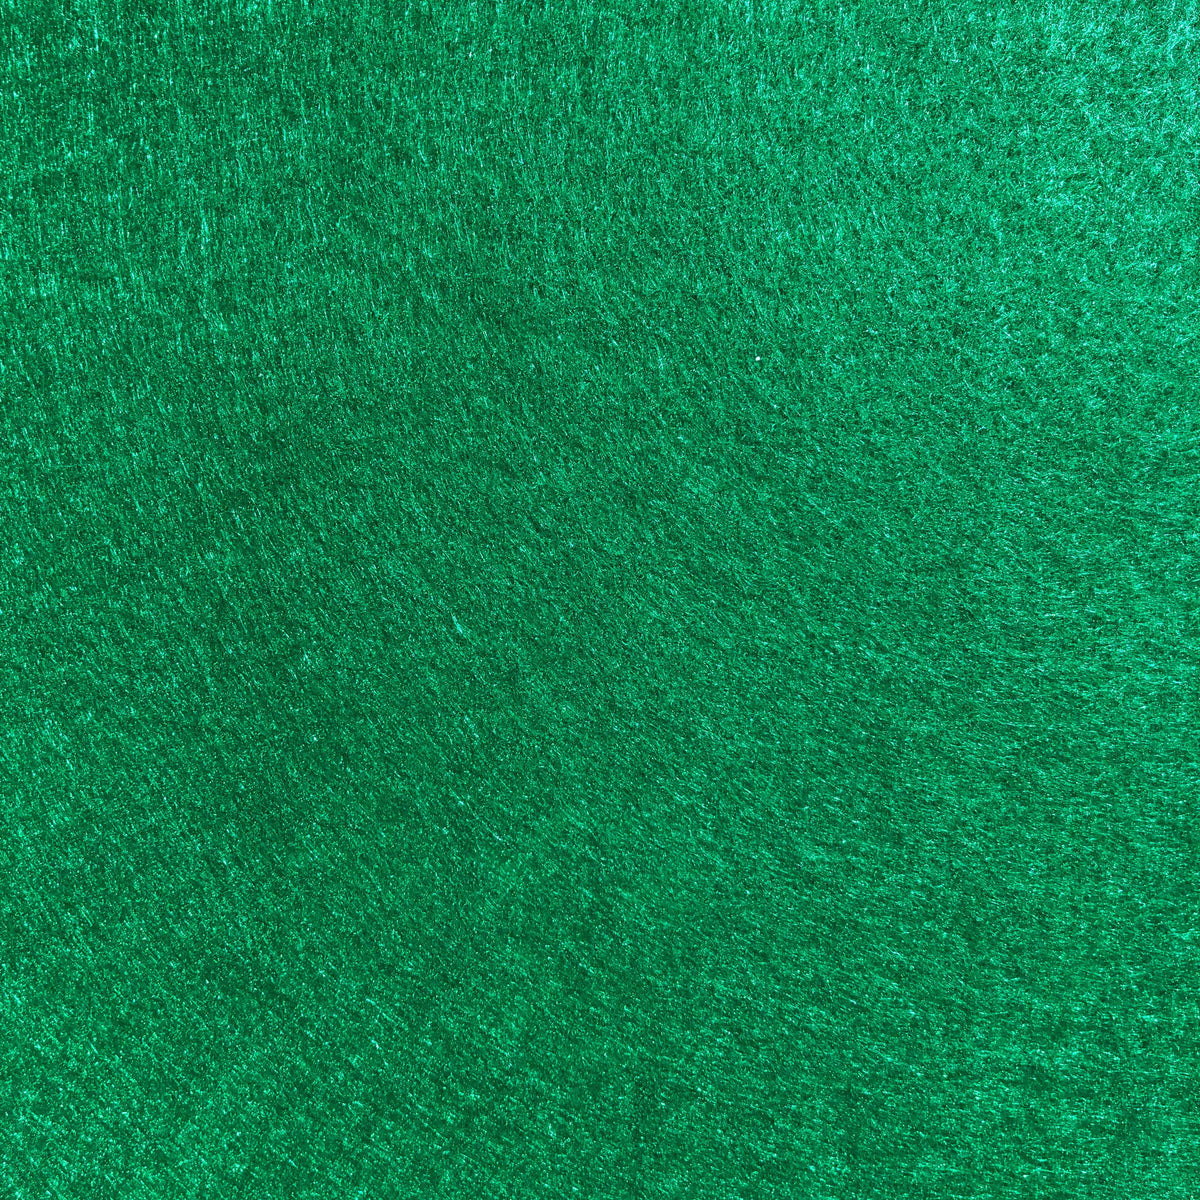 Soft Felt- Pirate Green